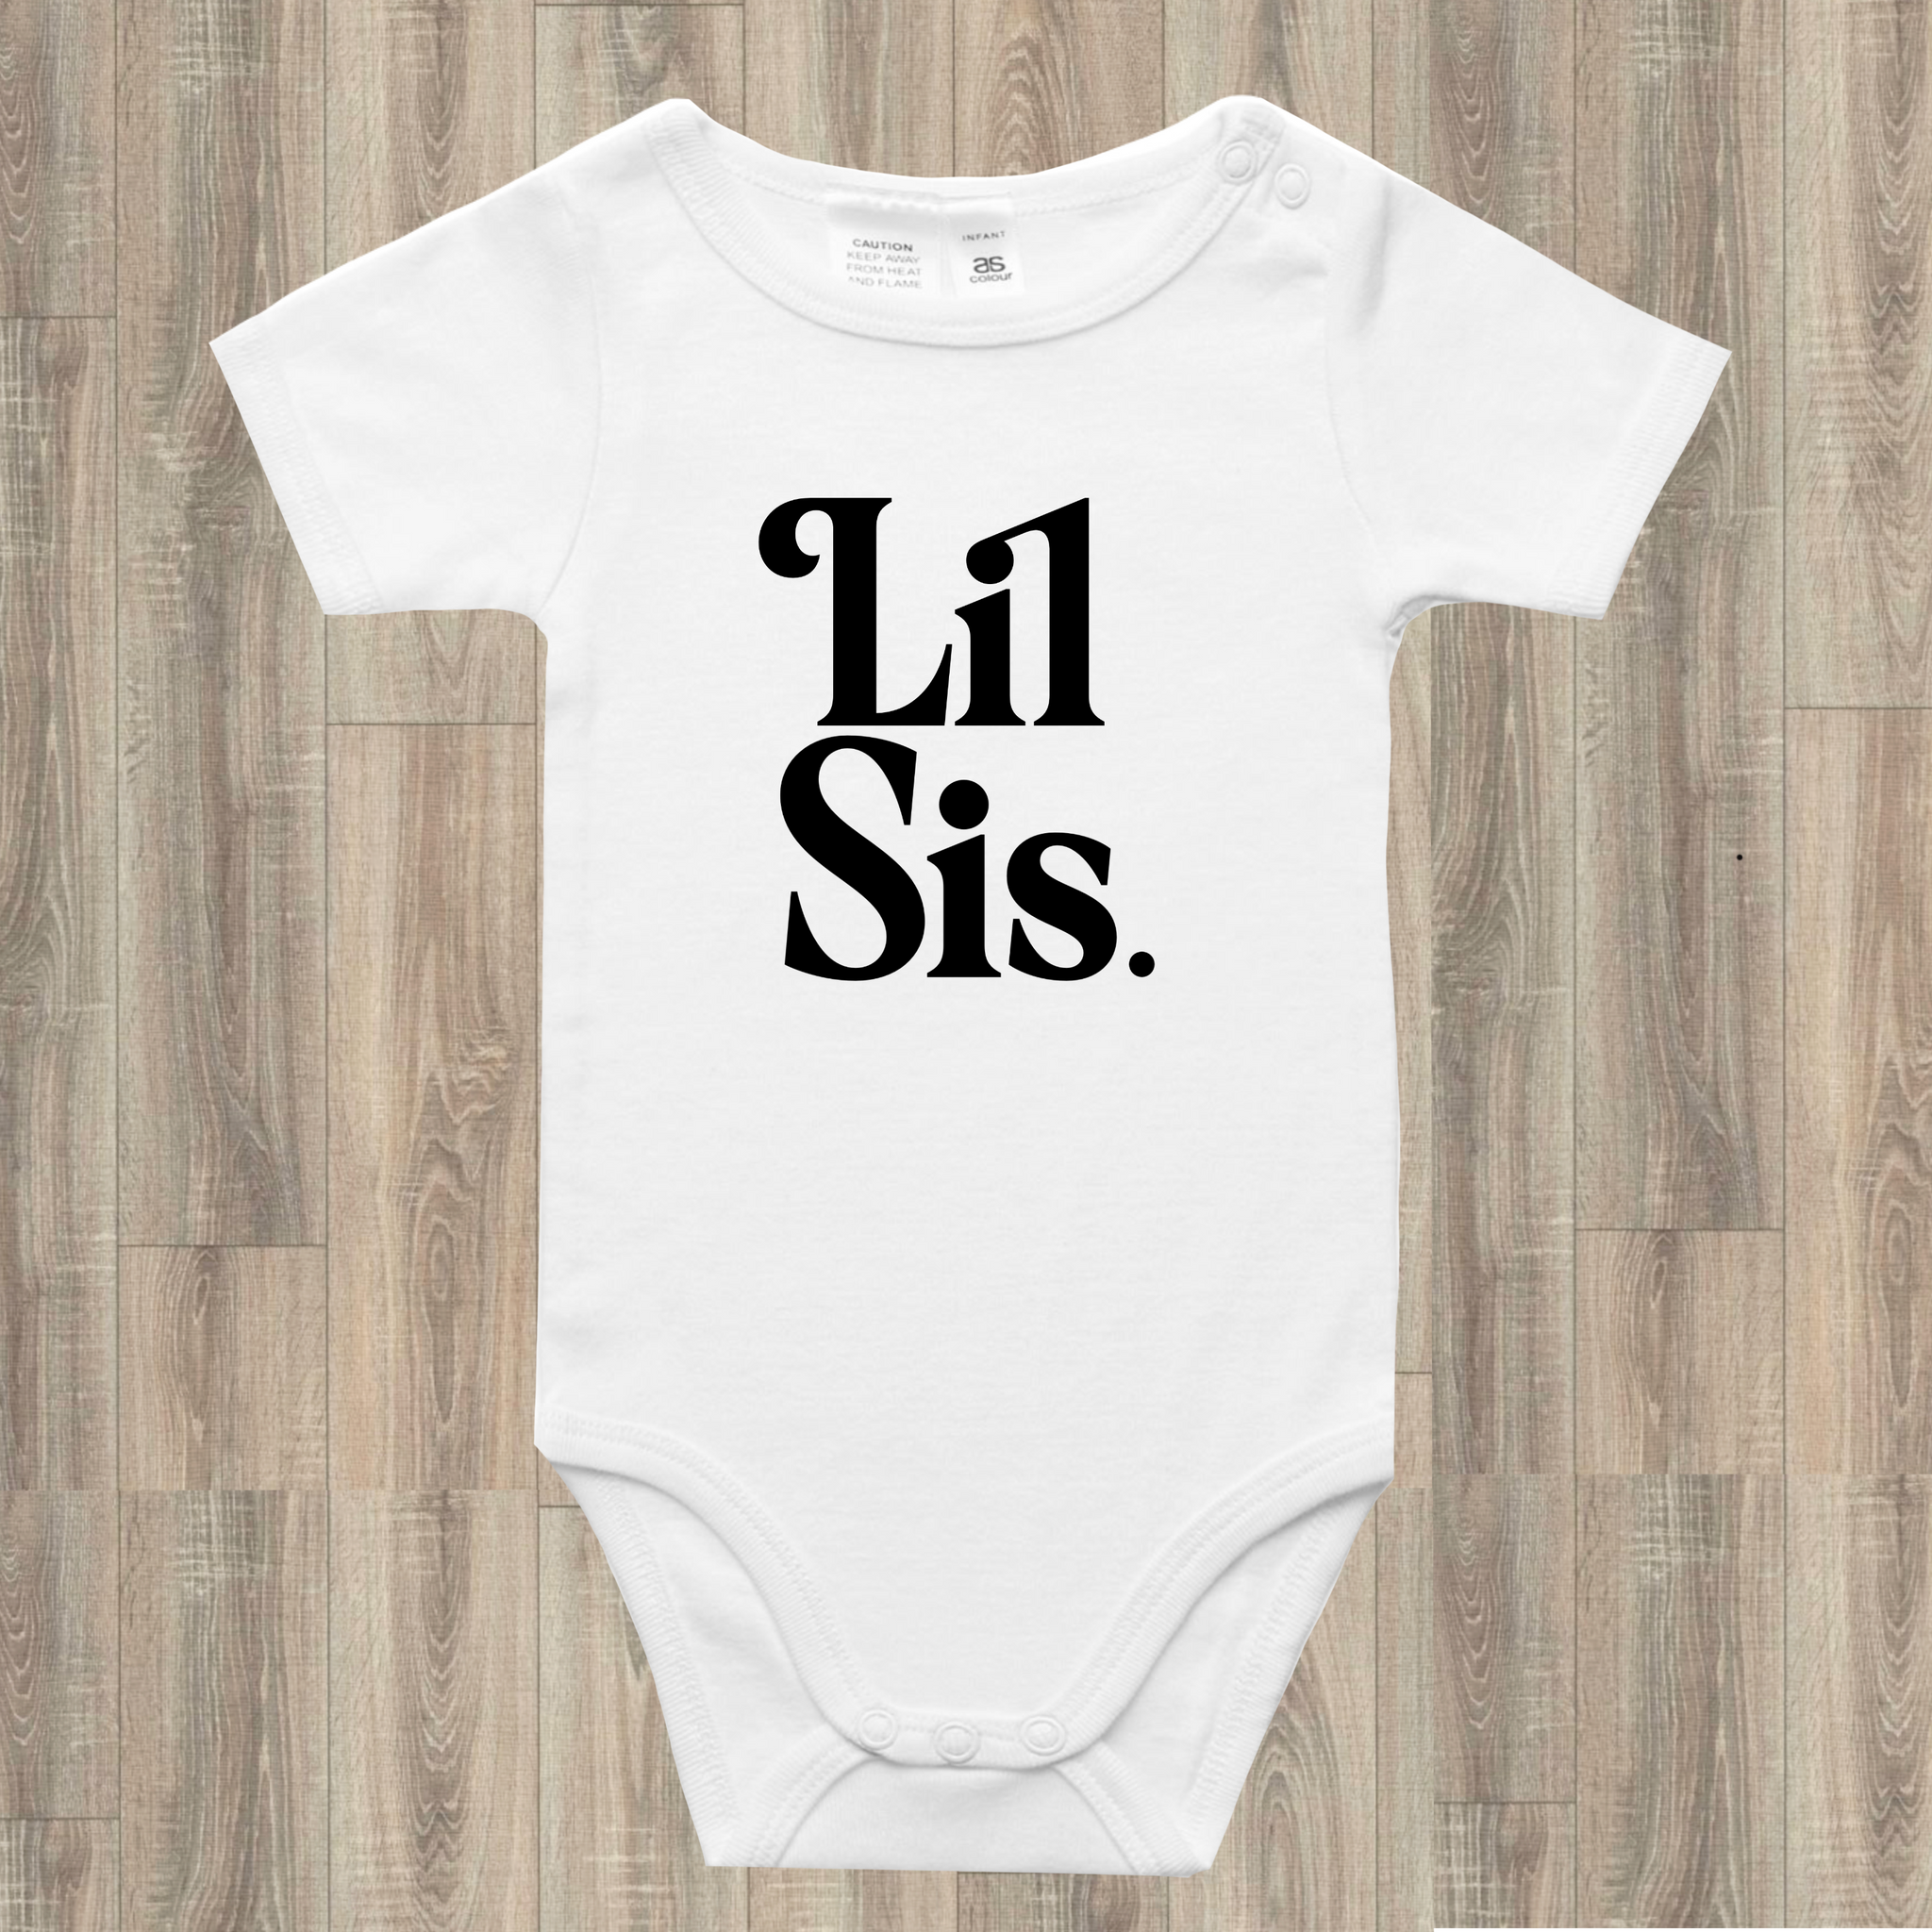 Lil Sis Onesie Tee or Toddler Tee